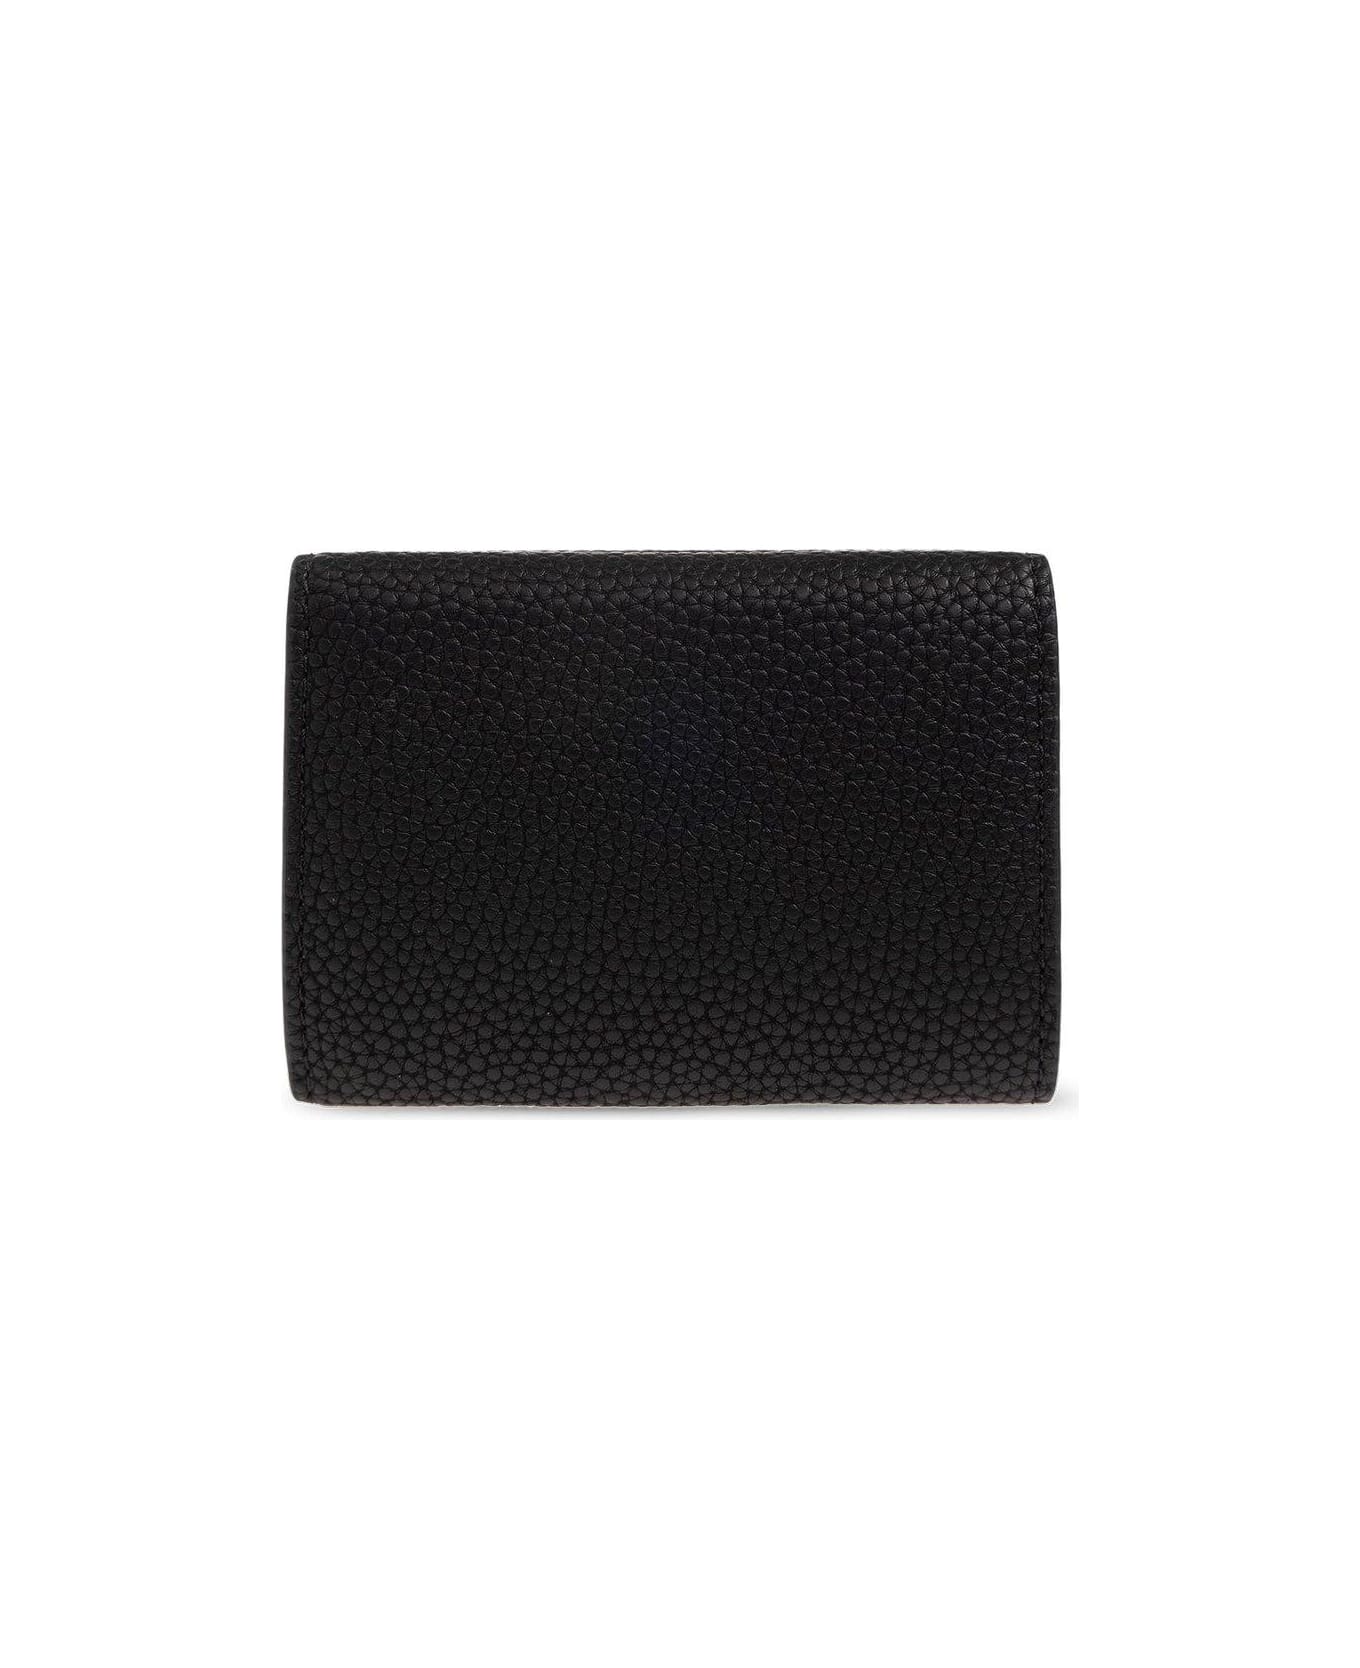 Emporio Armani Wallet With Logo - BLACK